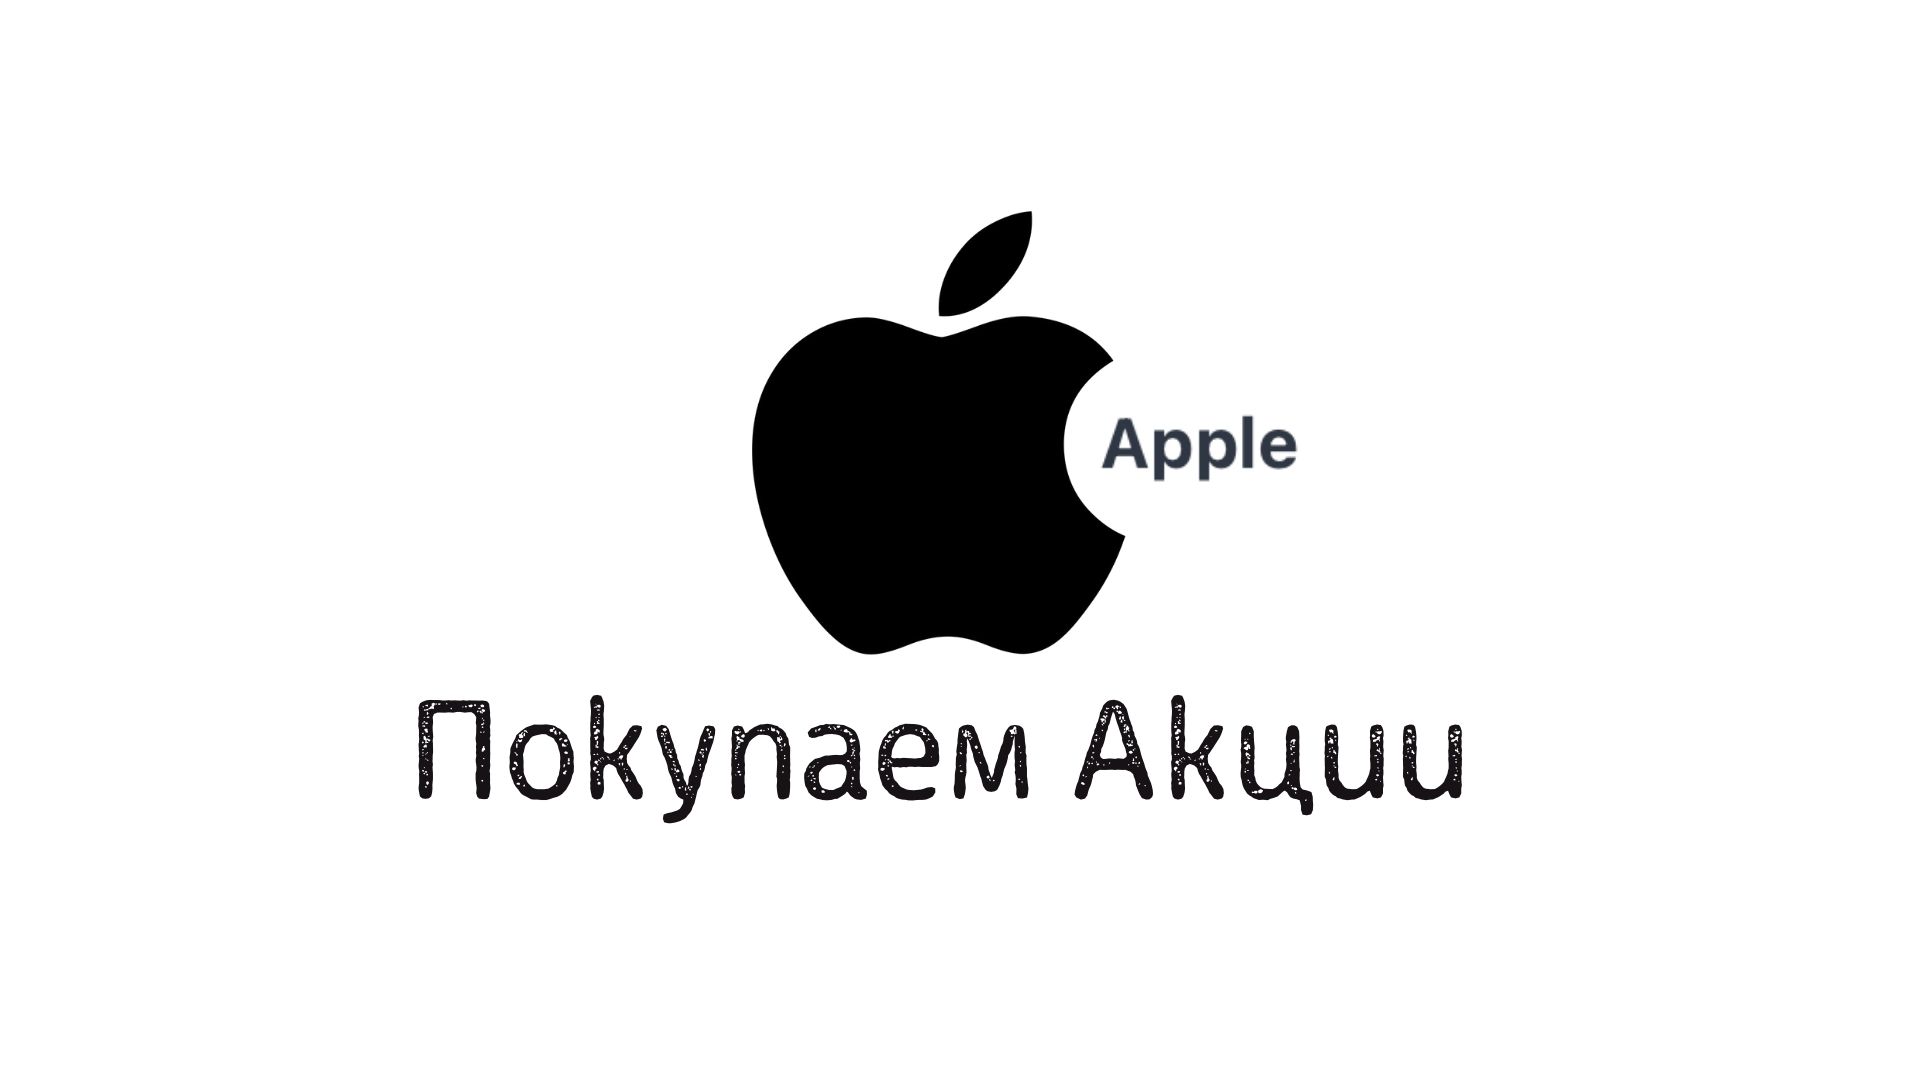 Как купить акции Apple в России физическому лицу